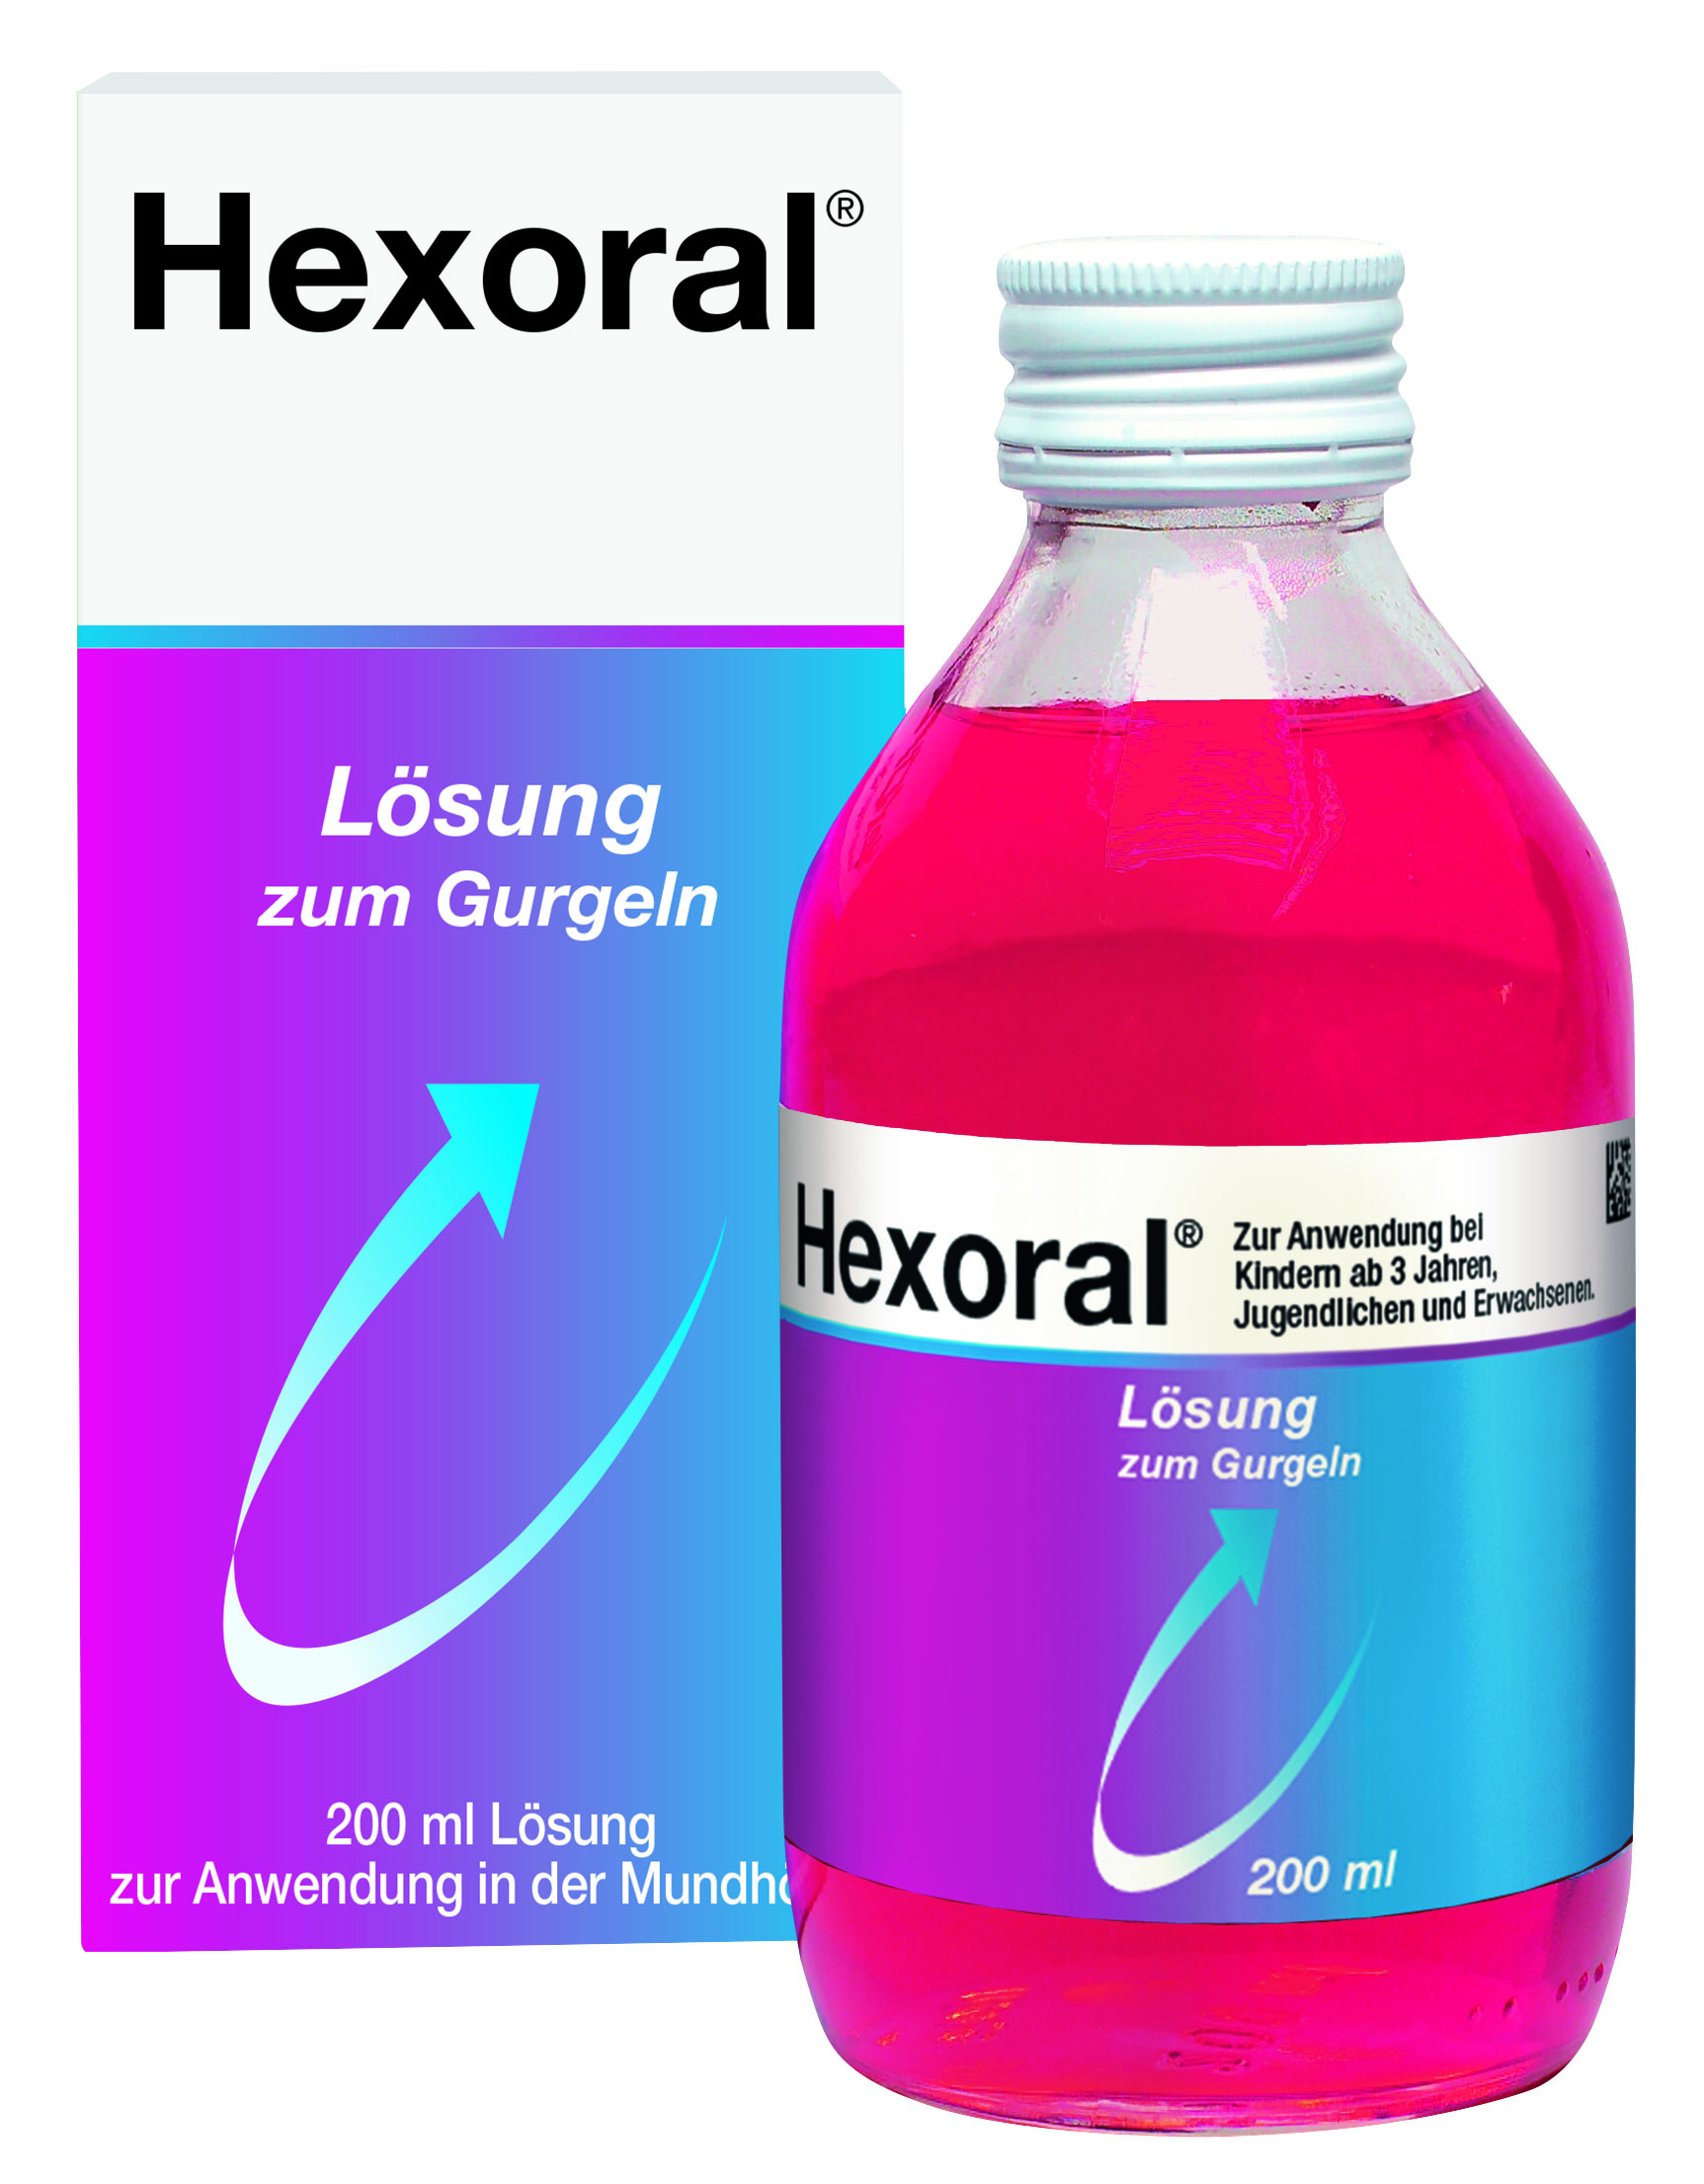 Hexoral - Lösung zum Gurgeln